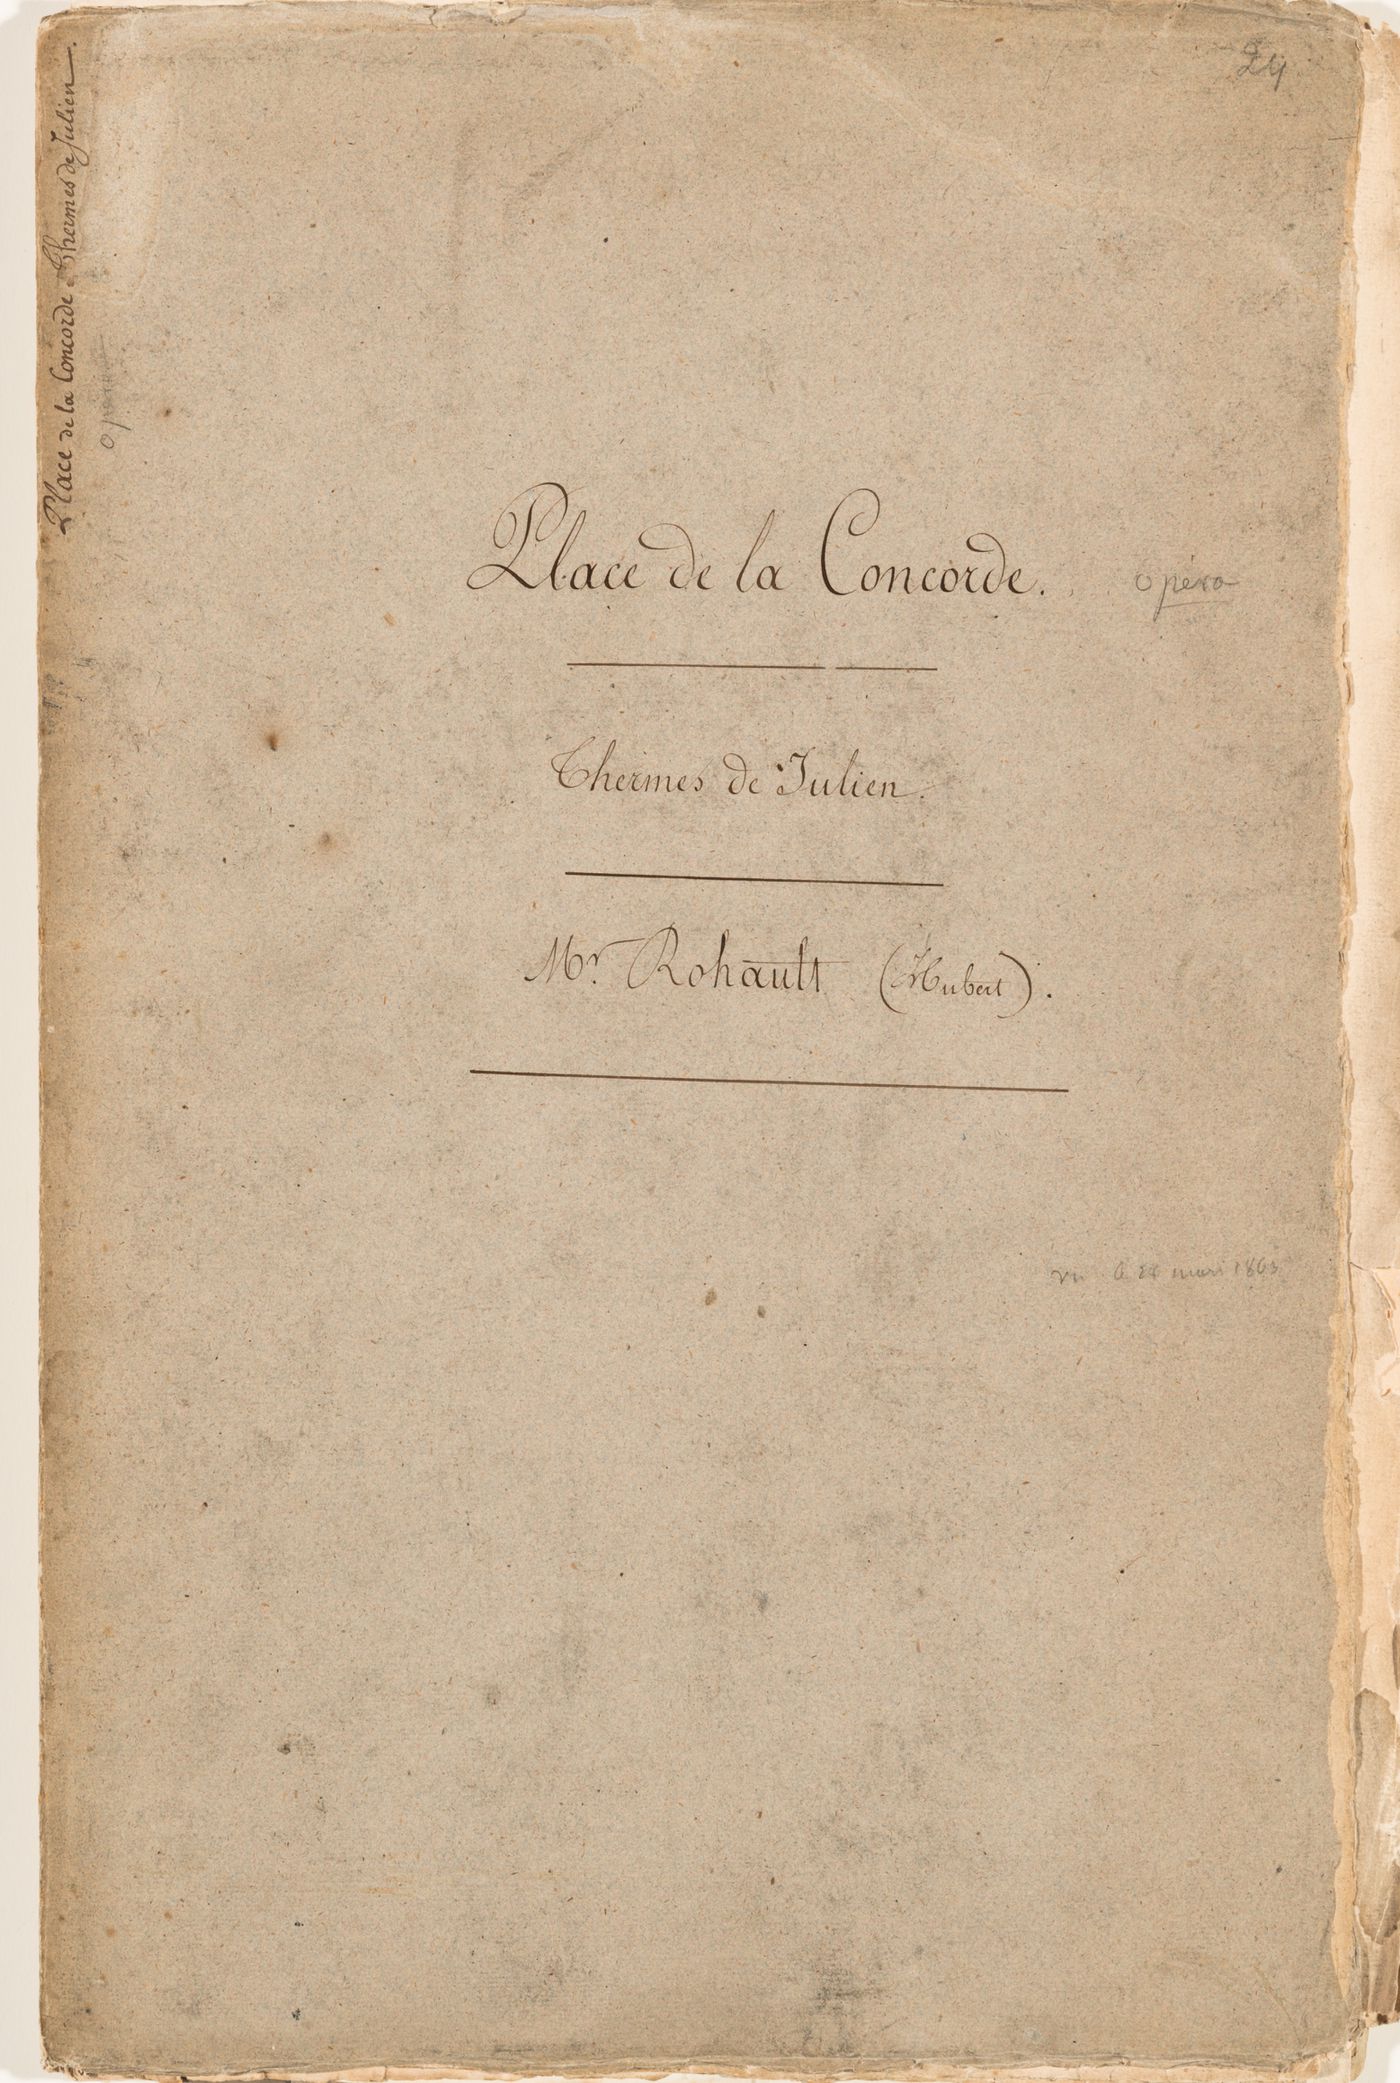 Album of drawings, prints and documents for place de la Concorde and the restoration of the Thermes de Julien, Paris